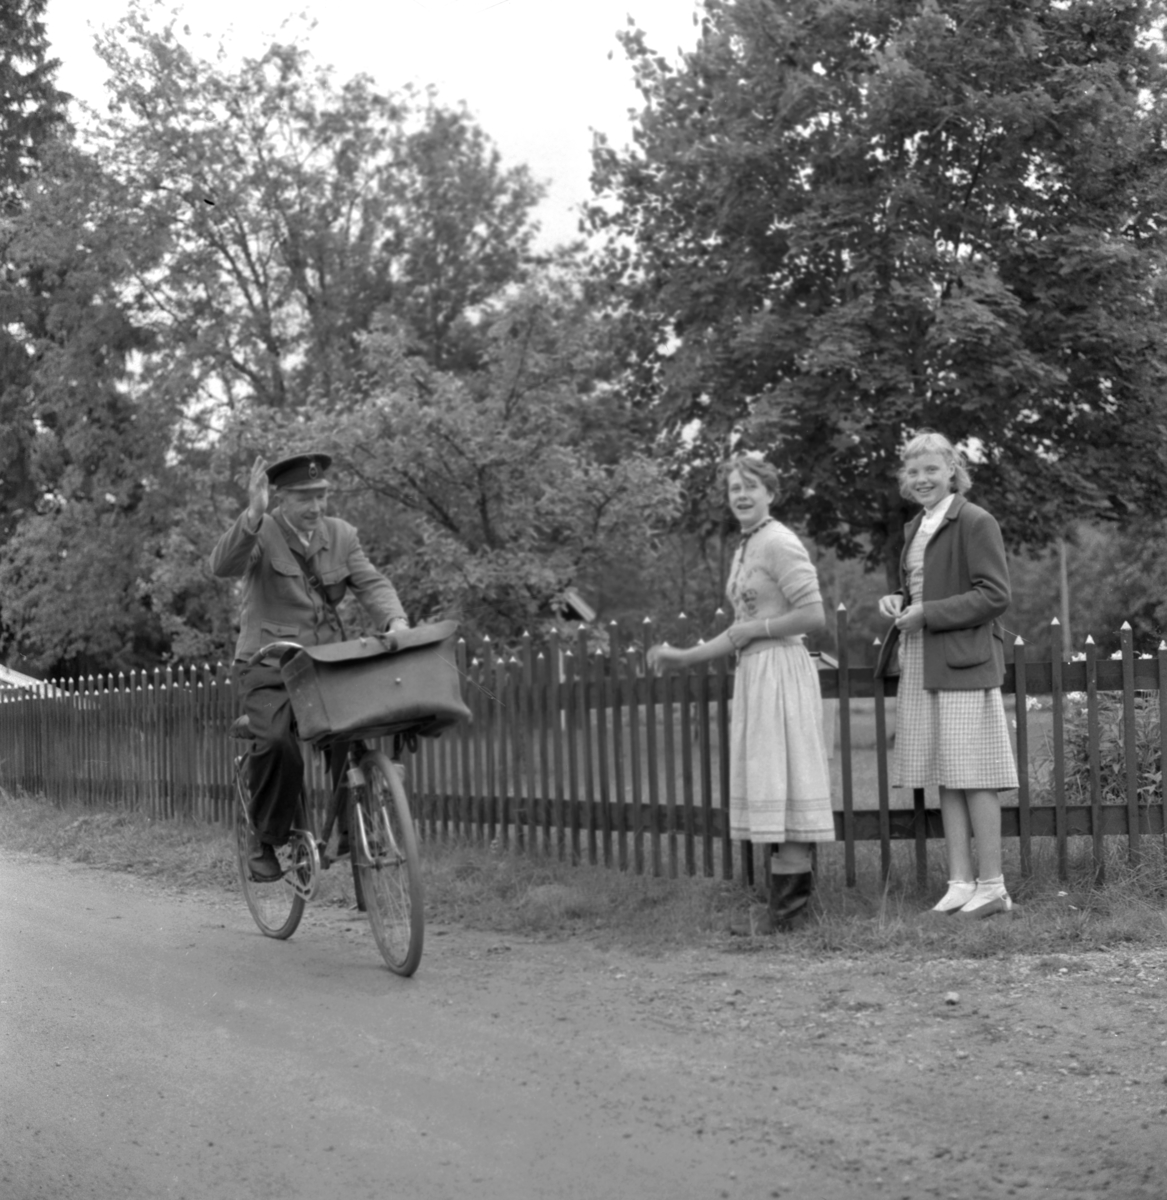 Lantbrevbärare i Mullhyttan. Bildsidan.
14 augusti 1955